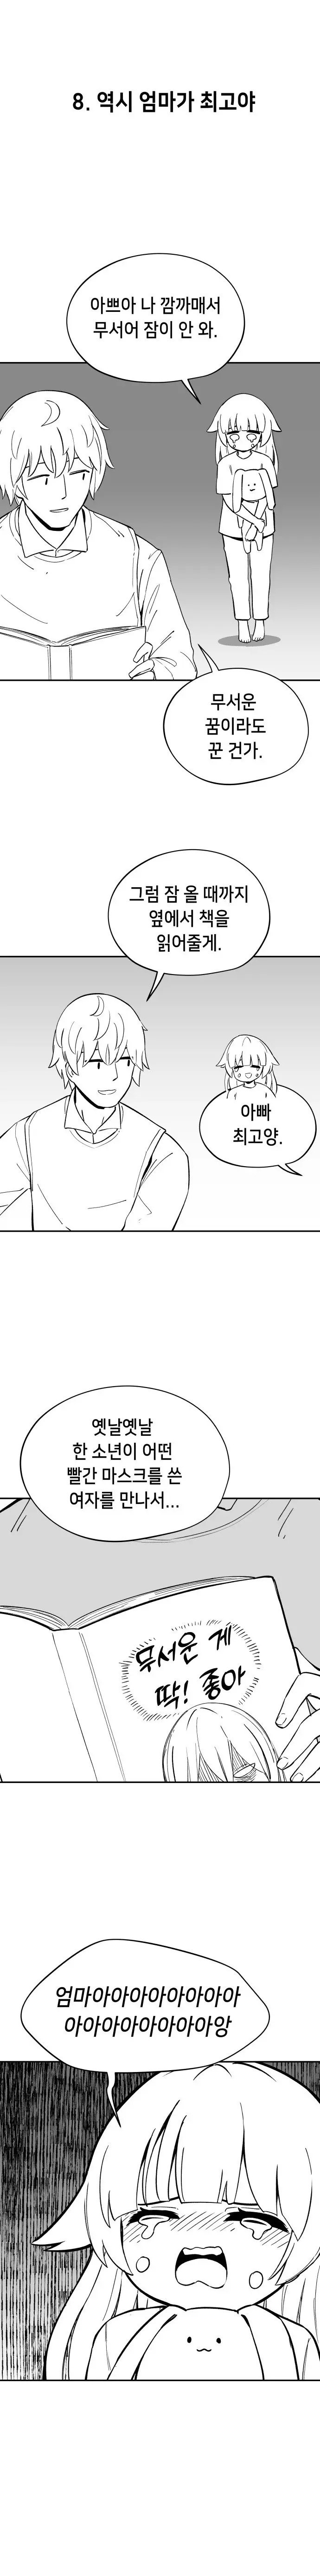 펌) 네이버 ㅋㅋㅋ단편 공모한 만화 업로드해봅니다 | mbong.kr 엠봉